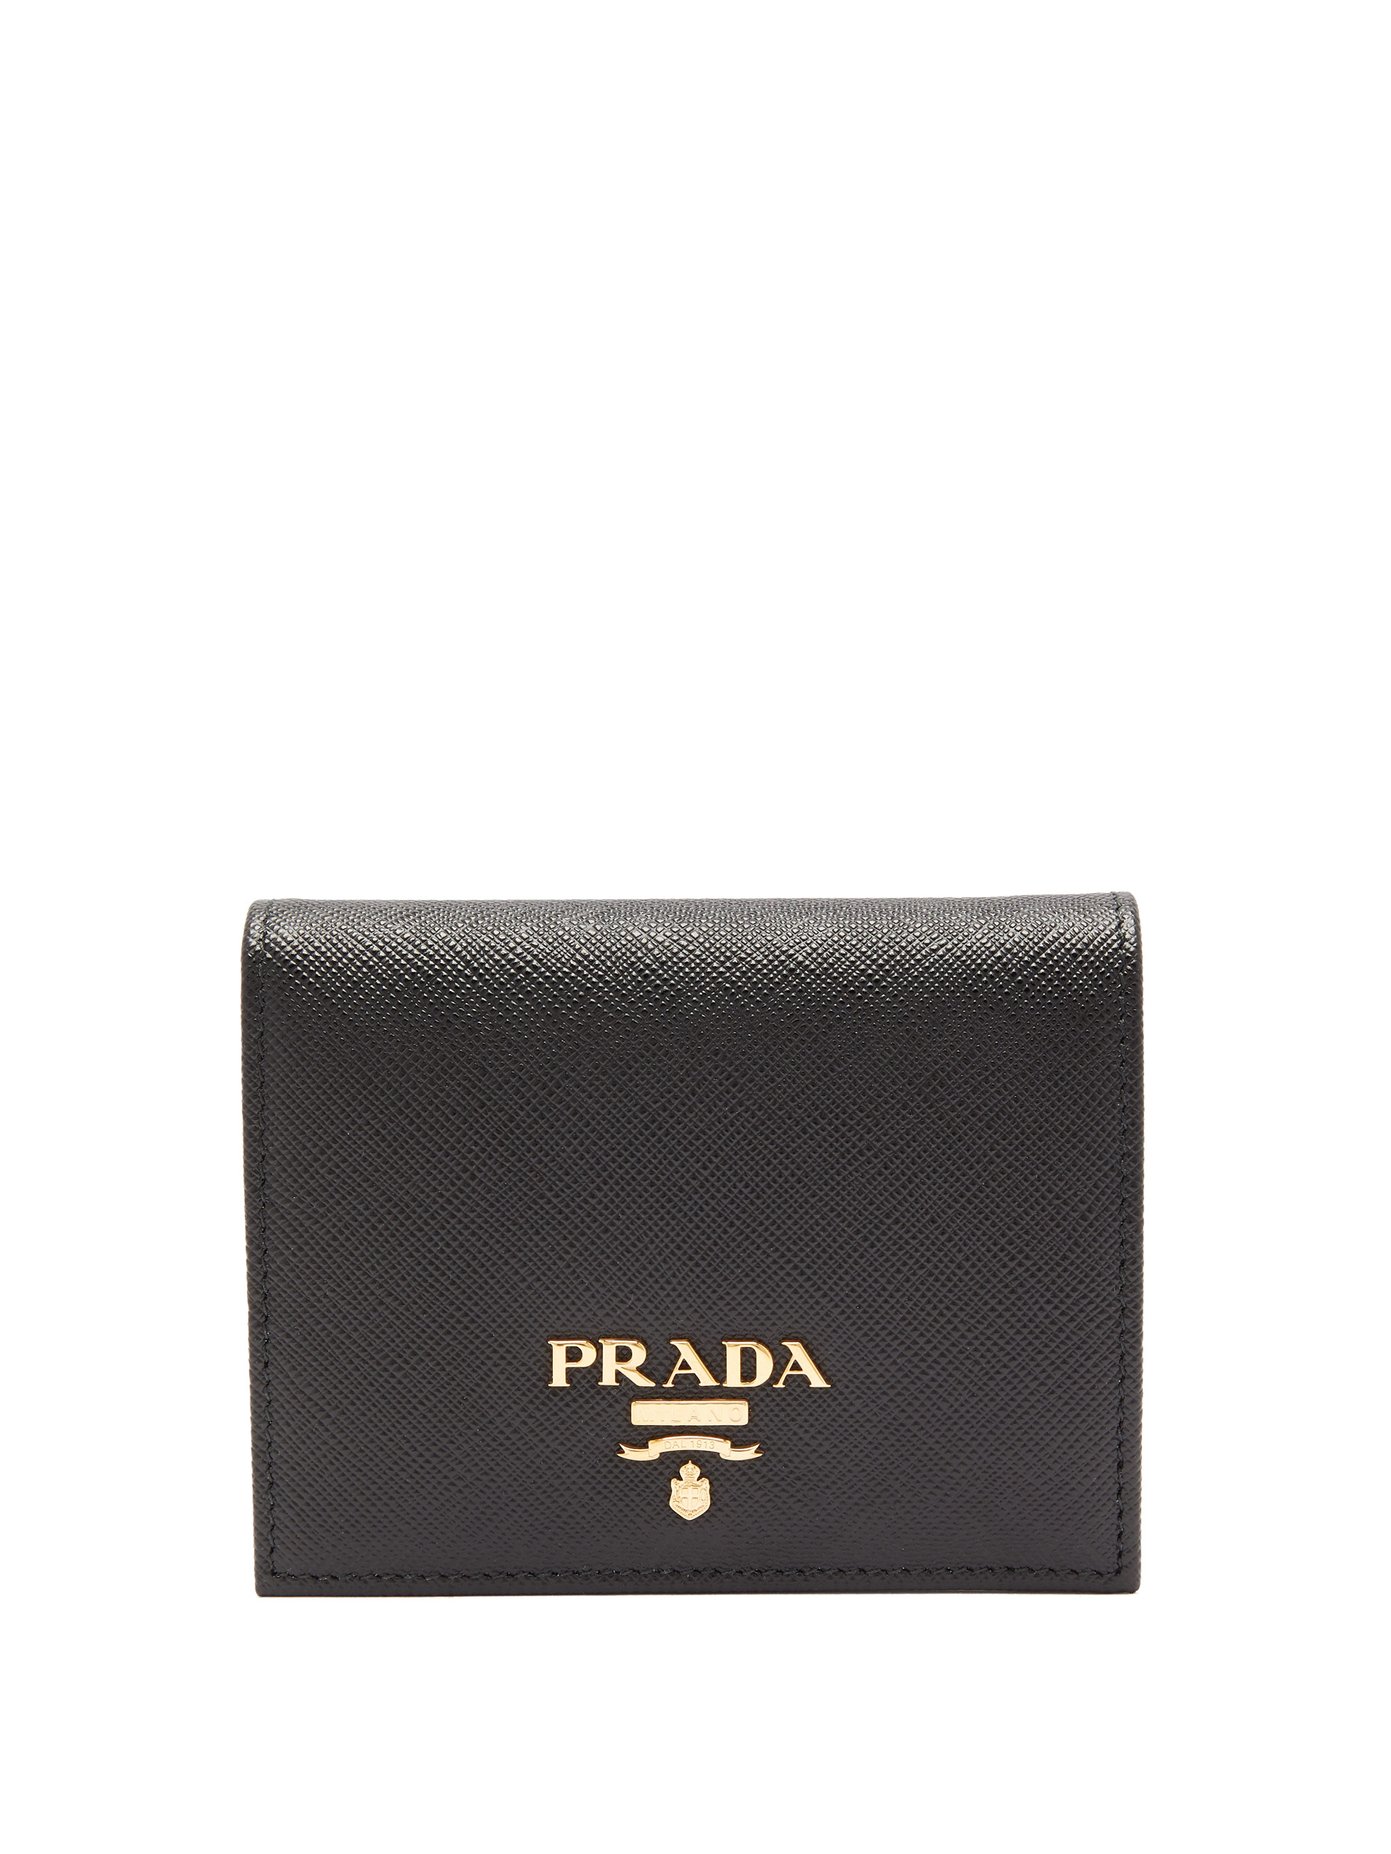 prada logo plaque wallet